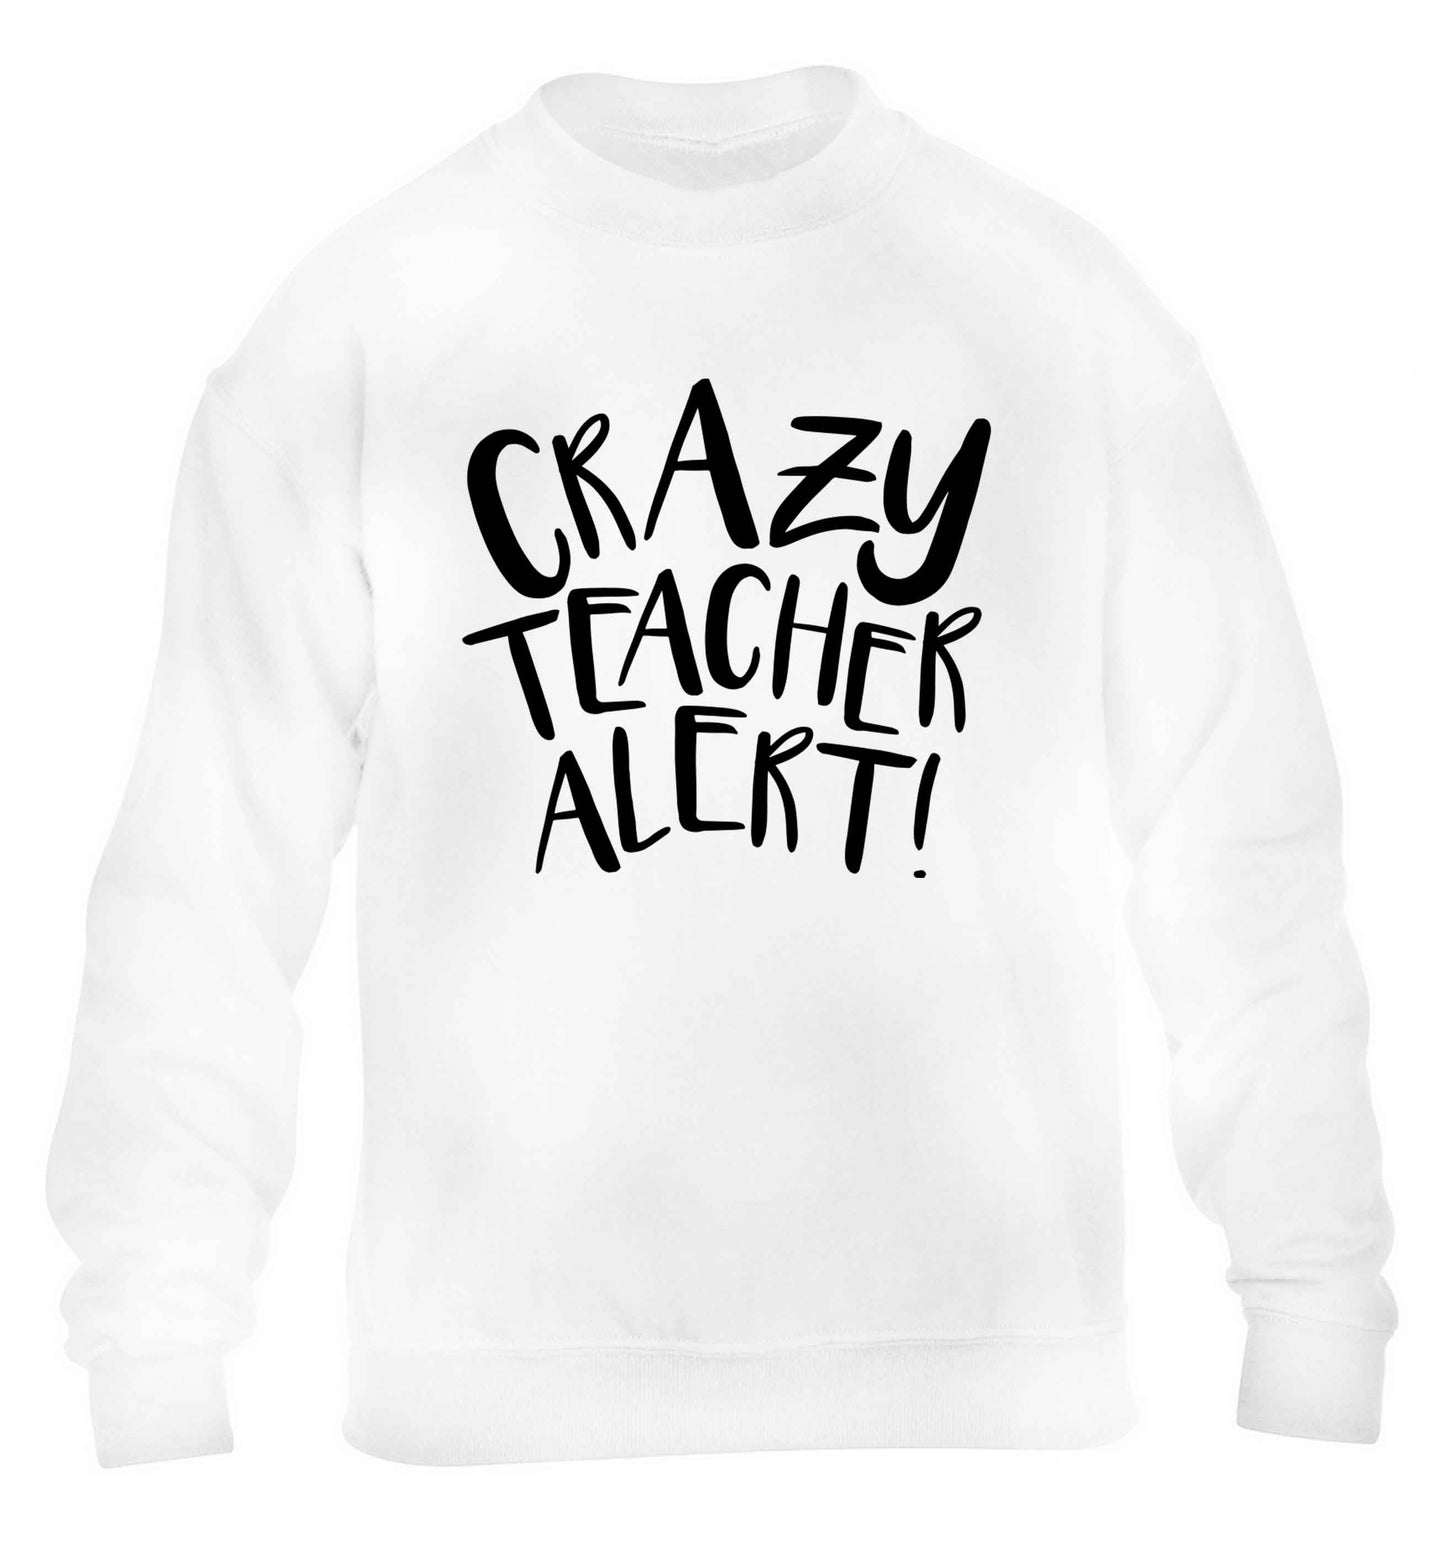 Crazy teacher alert children's white sweater 12-13 Years